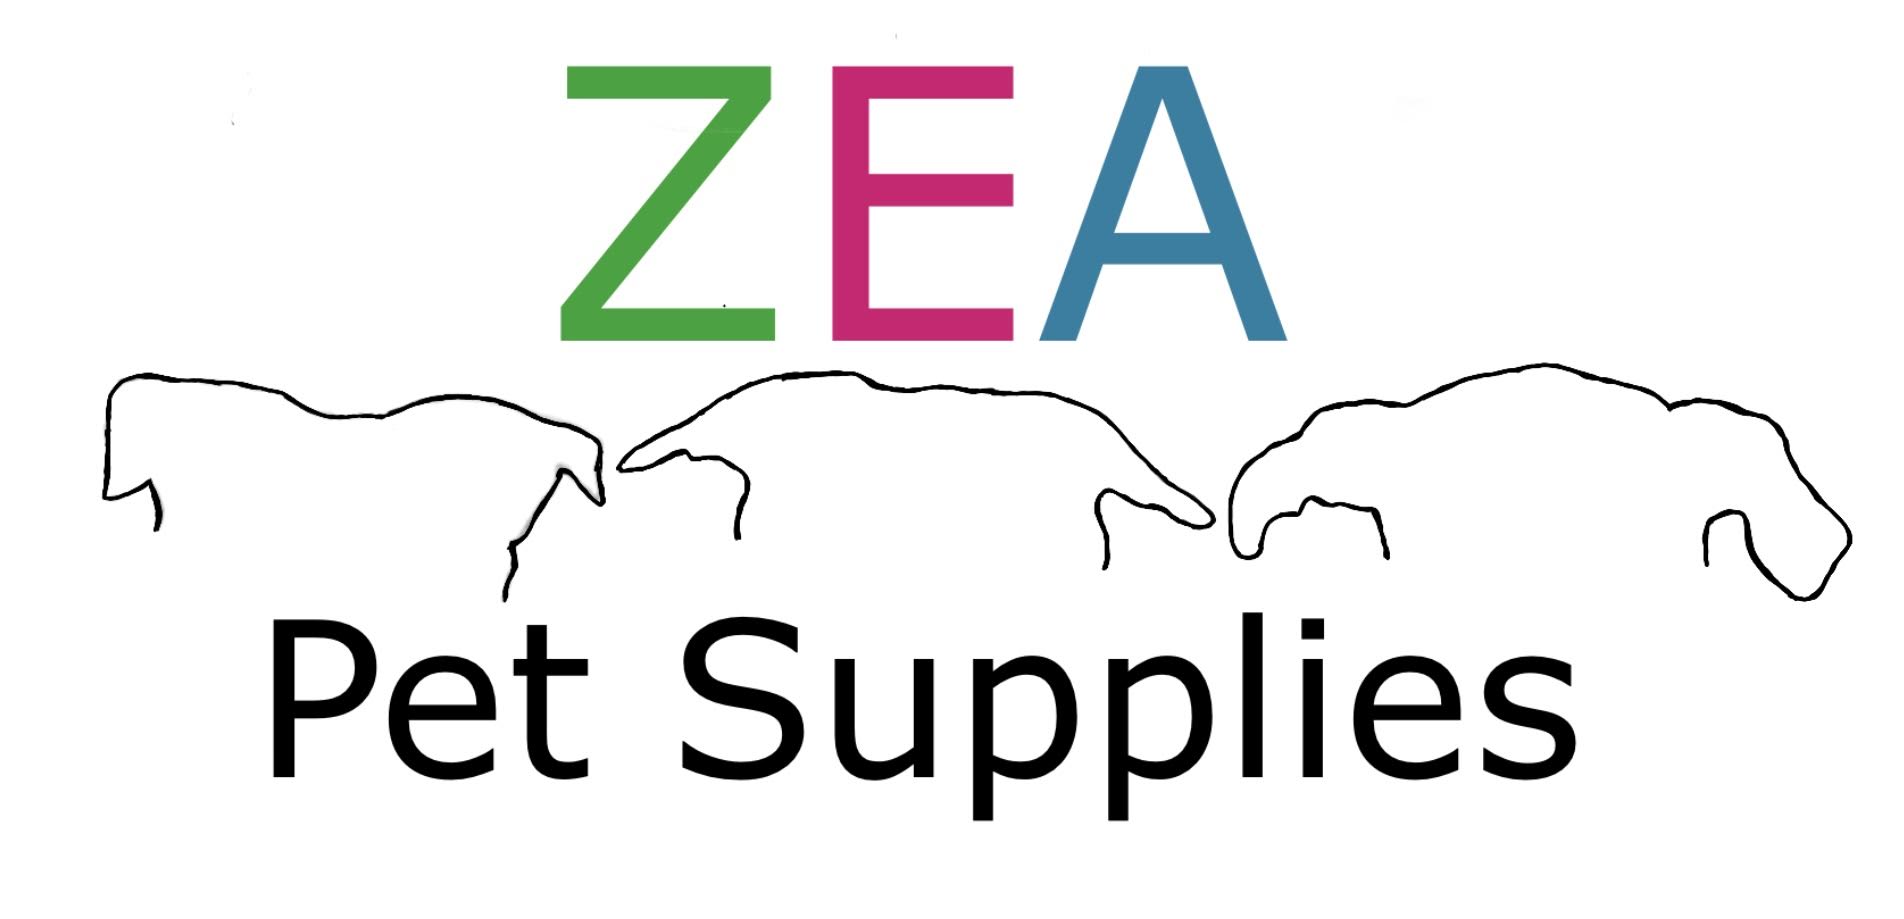 ZEA Pet Supplies